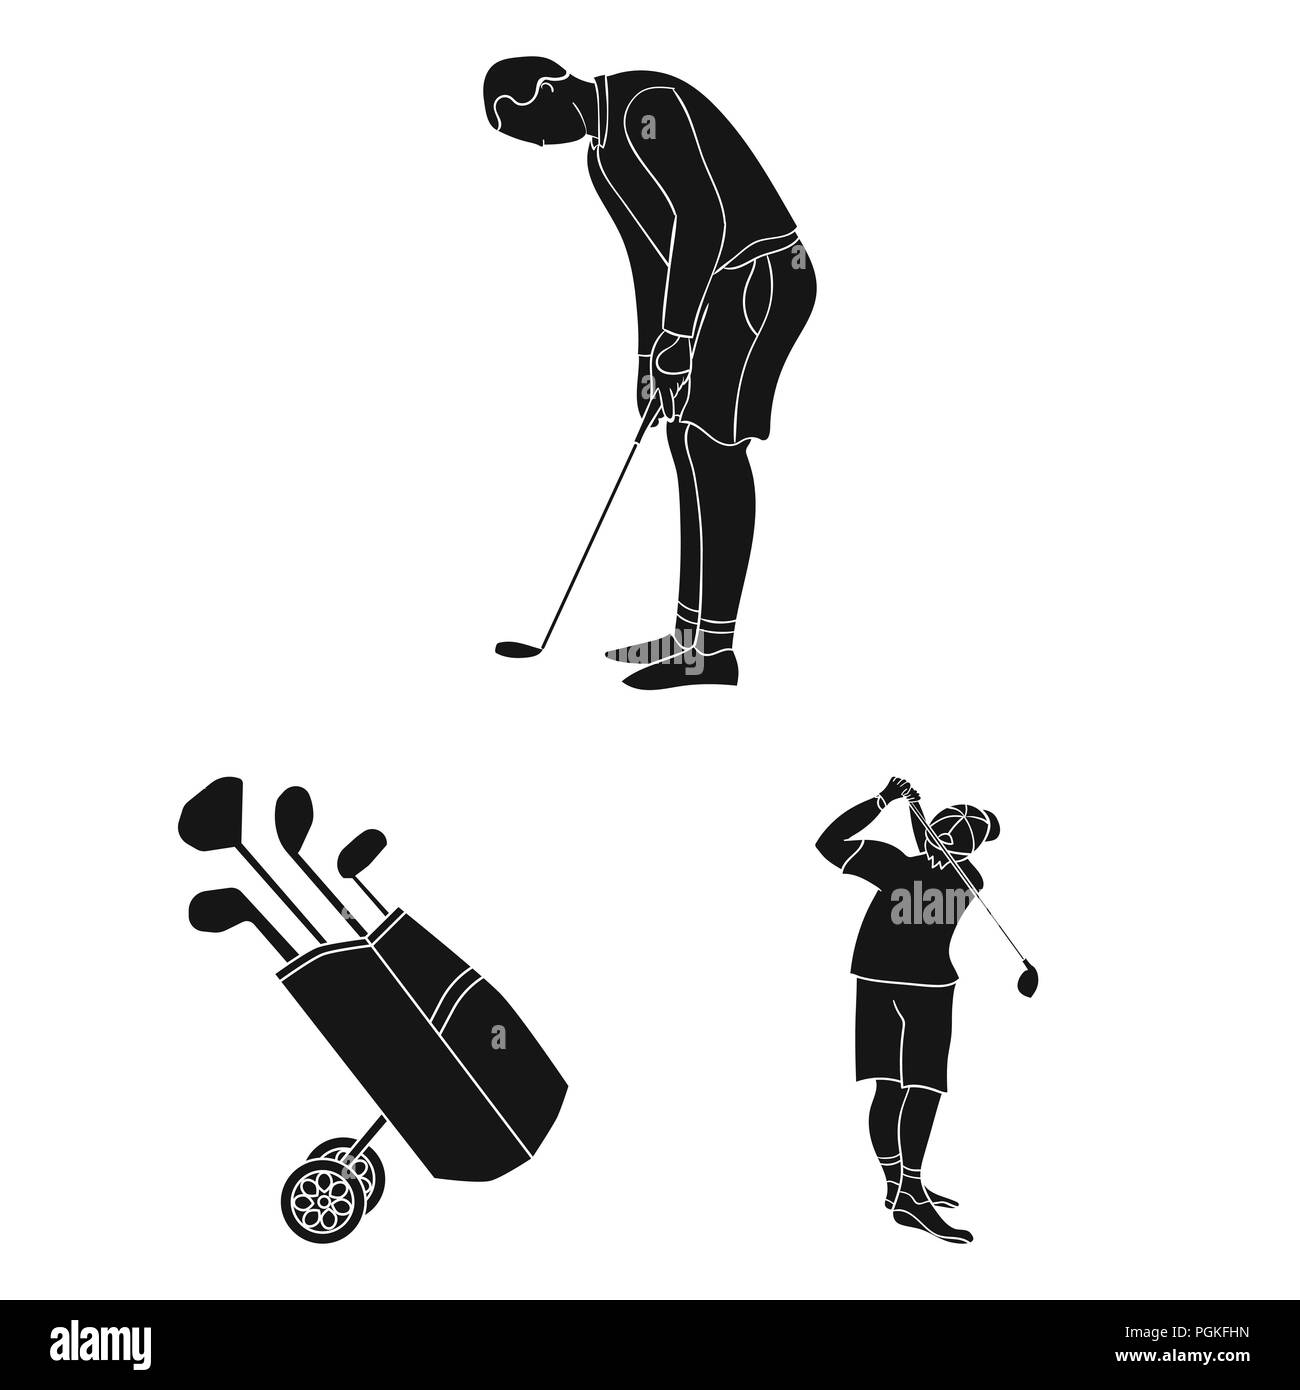 Vêtements de golf illustration de vecteur. Illustration du cours - 216180162